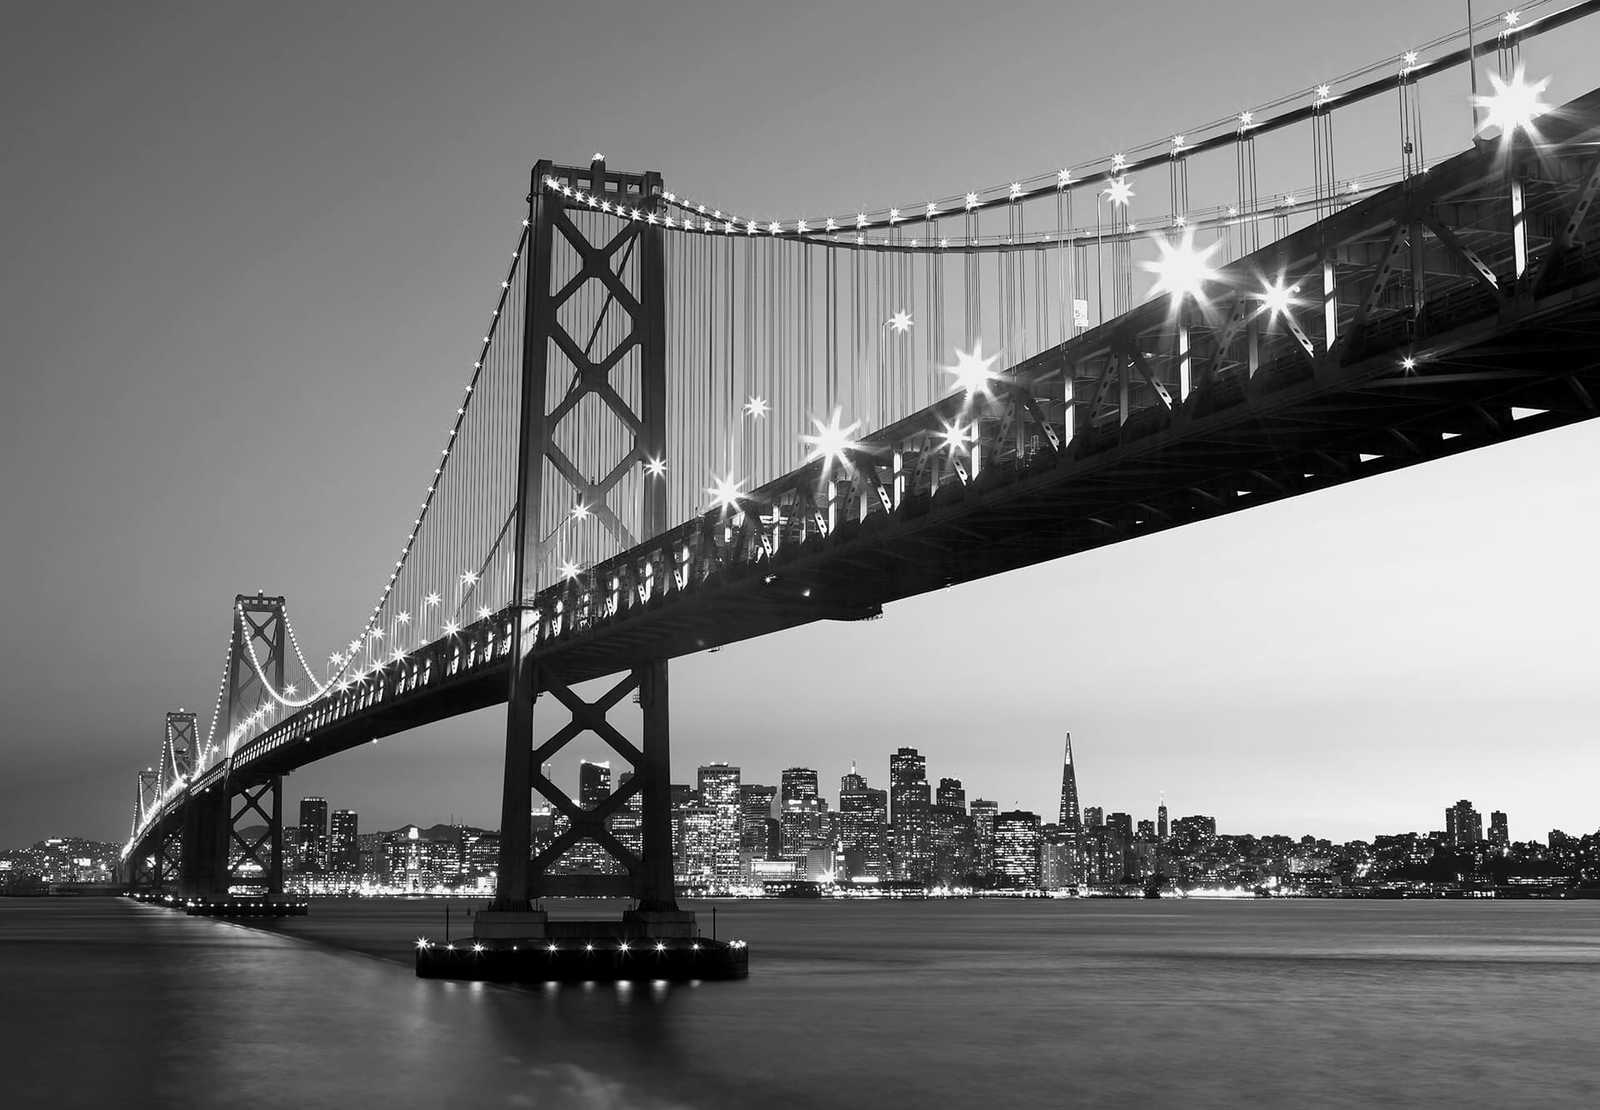         San Francisco mural skyline - black, white
    